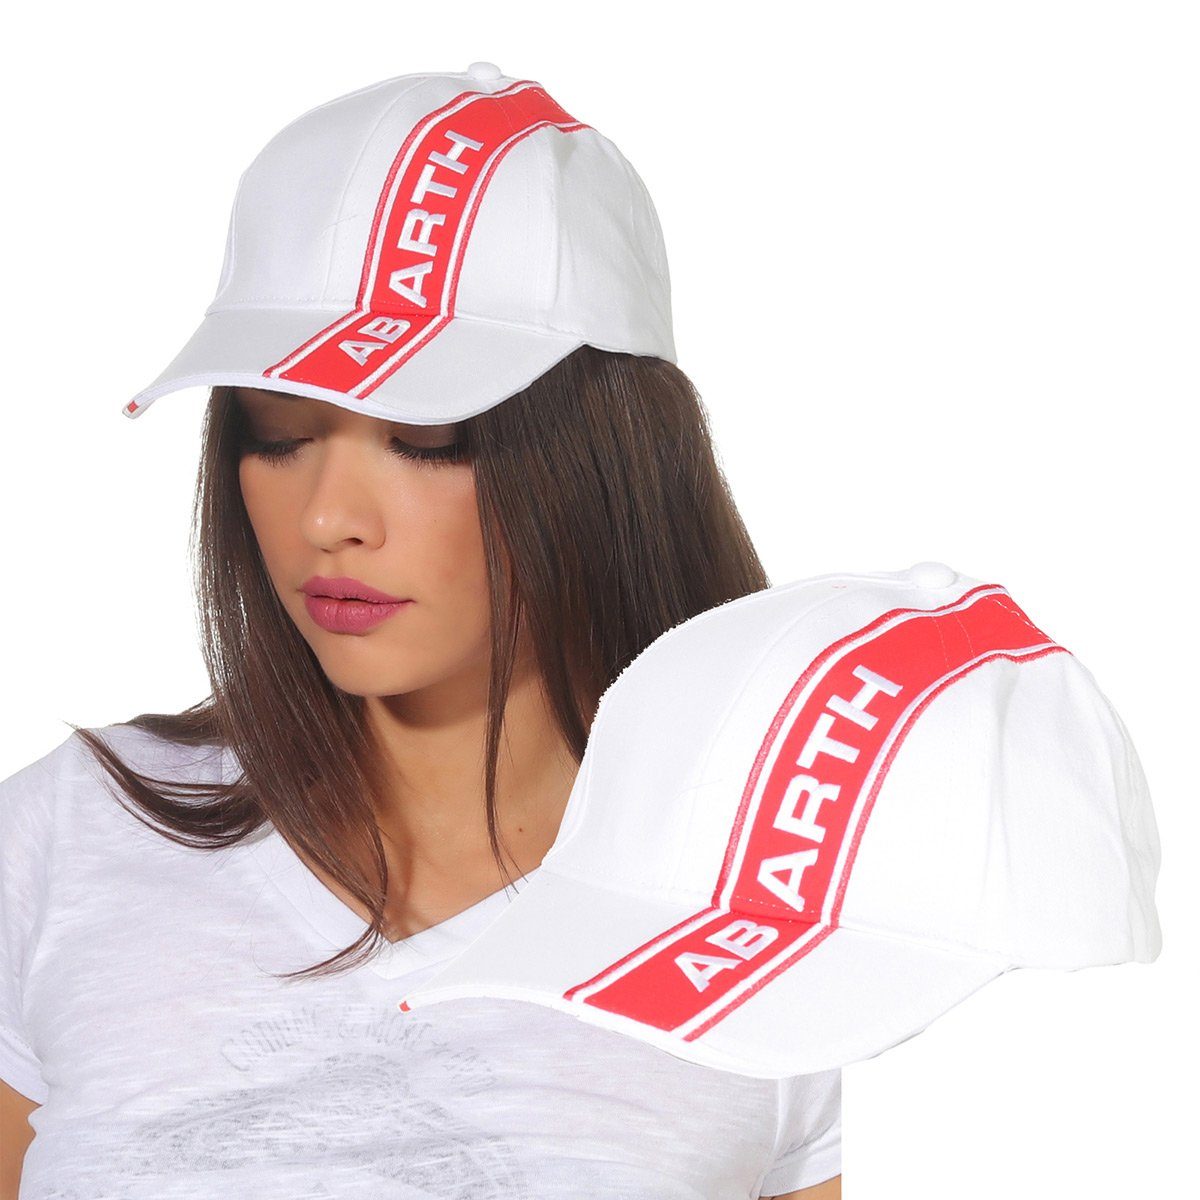 Markenwarenshop-Style Baseball Cap Abarth - Cap Mütze Schildmütze Kappe Basecap Damen Weiß